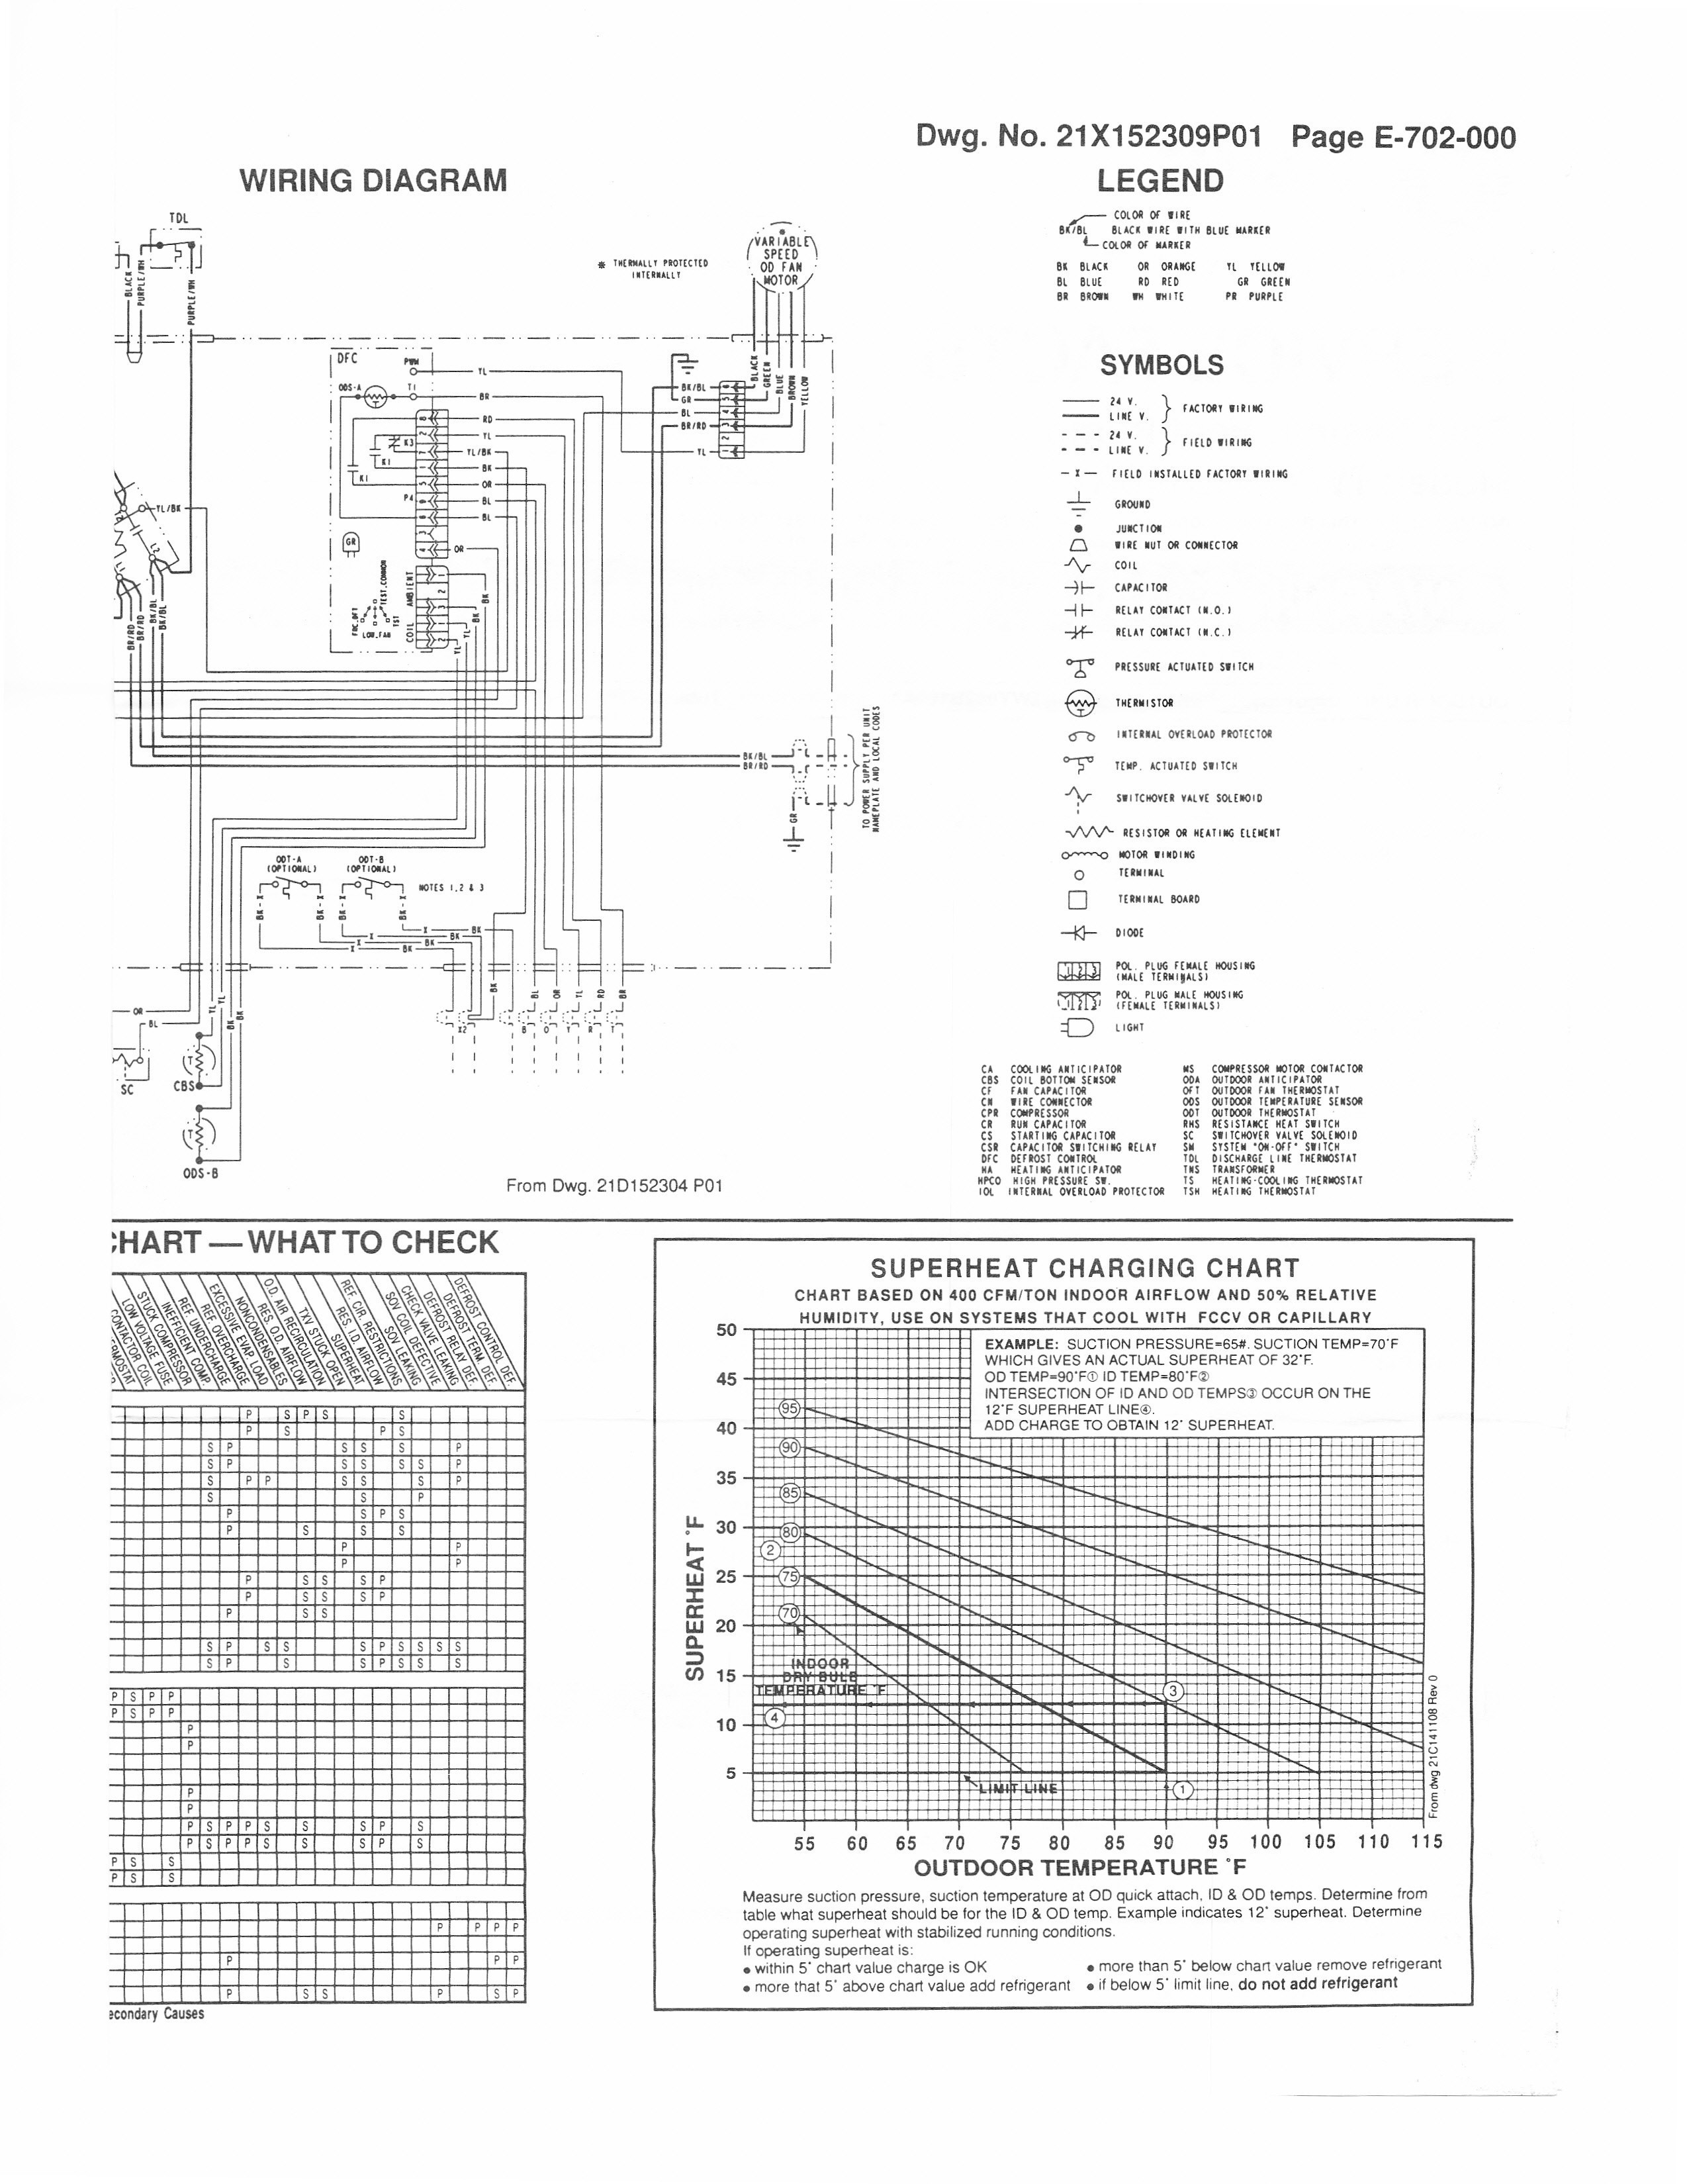 Trane Air Handler Wiring Diagram Wiring Diagram for Trane Air Conditioner Best Wiring Diagram for Of Trane Air Handler Wiring Diagram